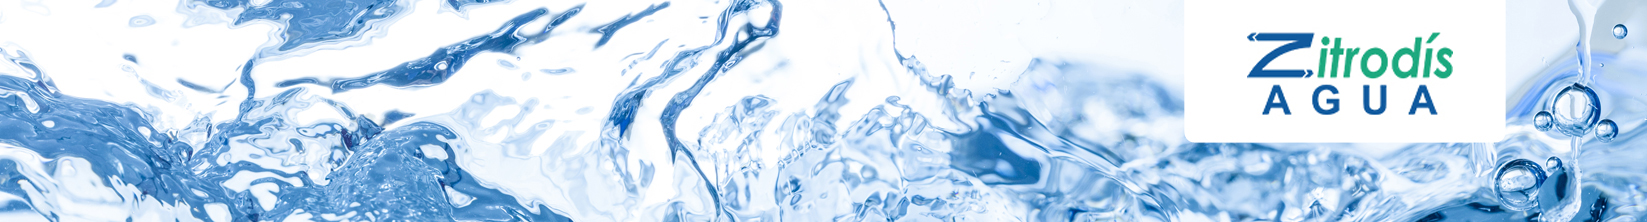 zitrodis agua - dispensadores de agua blupura